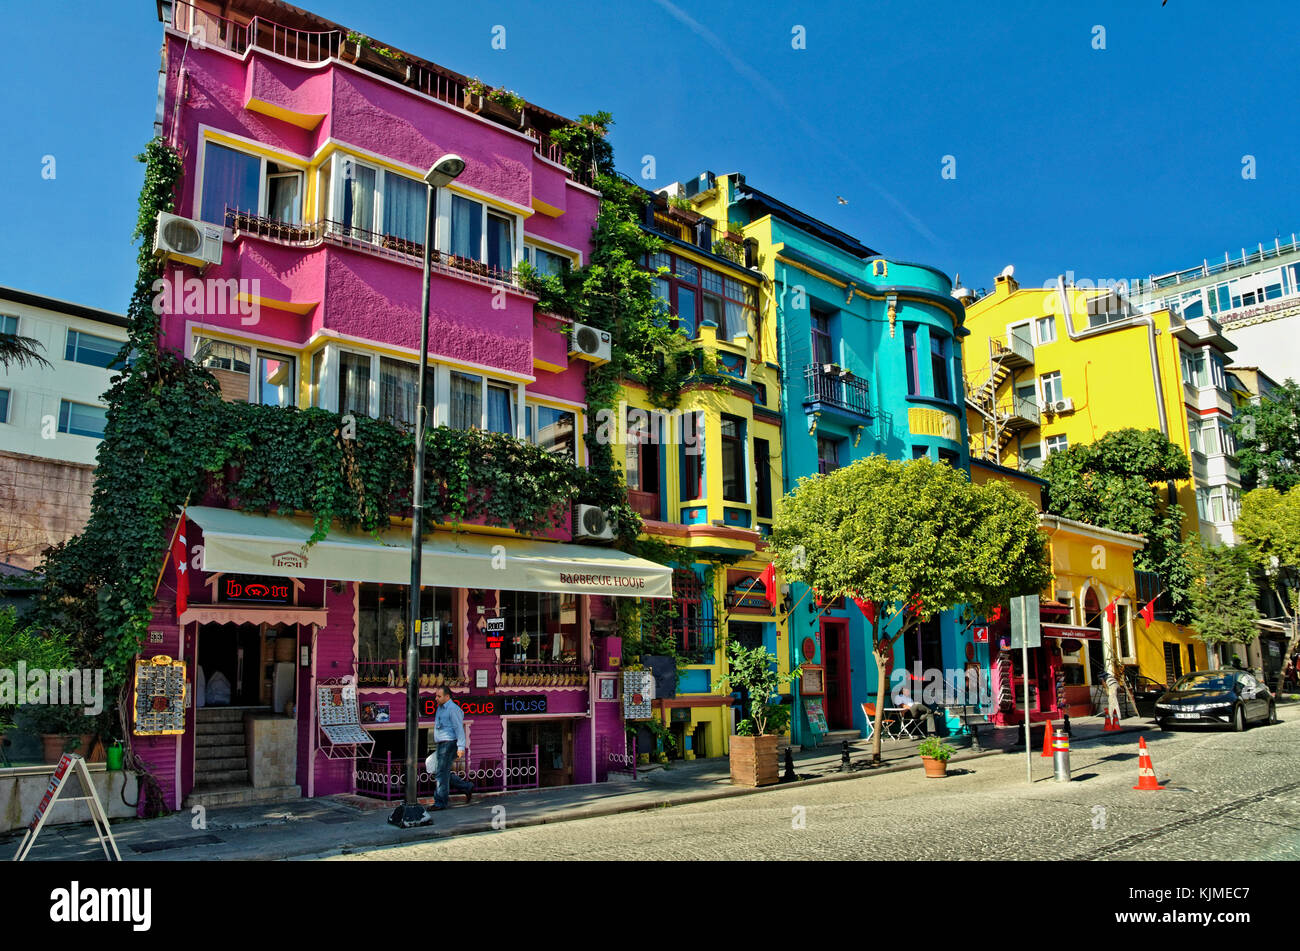 Bunte Hotels auf Yerebatan Straße, neben der unterirdische Yerebatan-Zisterne, Sultanahmet, Fatih, Istanbul, Türkei. Stockfoto